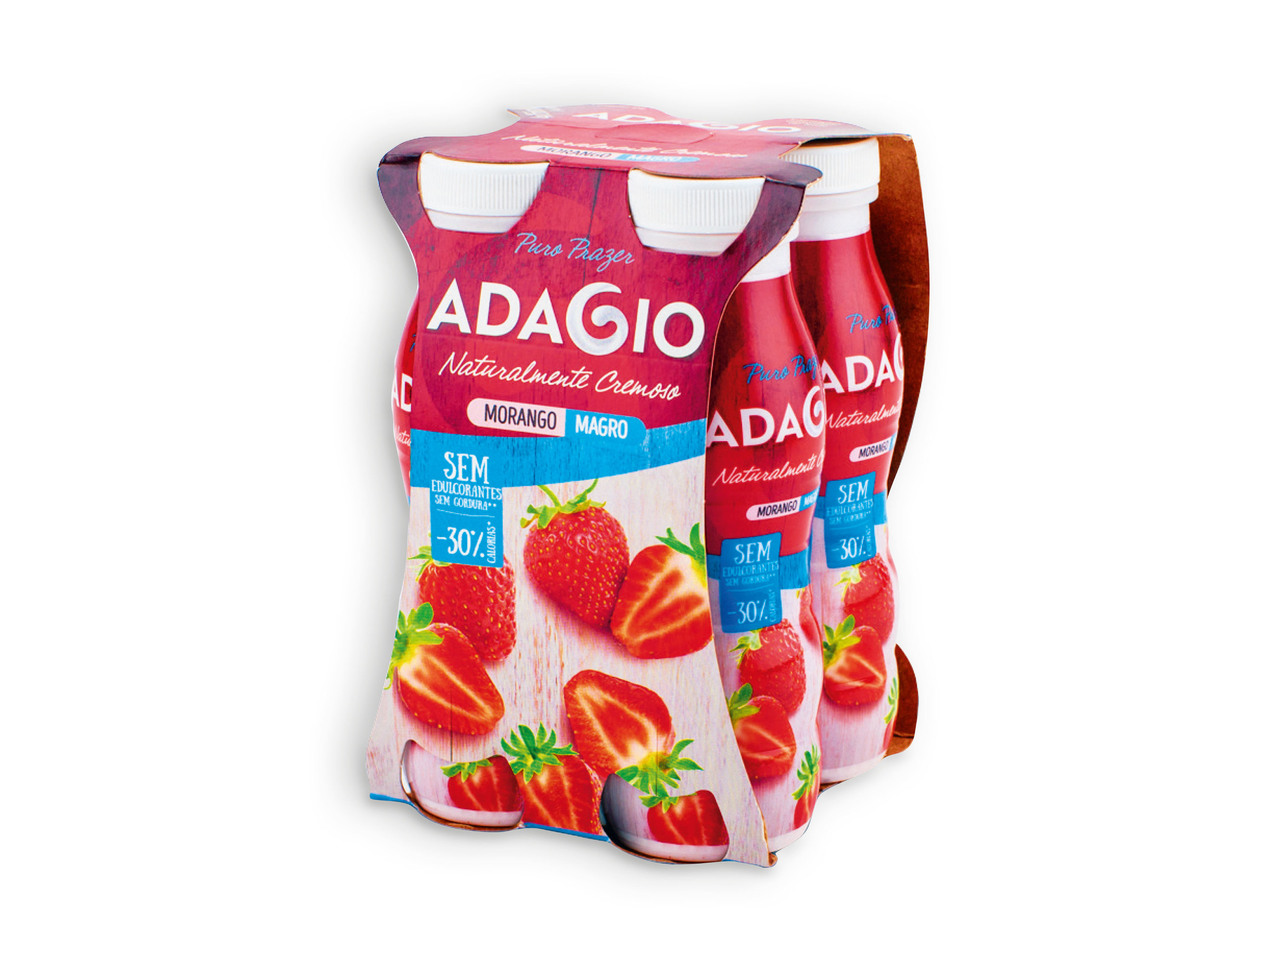 ADAGIO(R) Iogurte Líquido / Líquido Magro